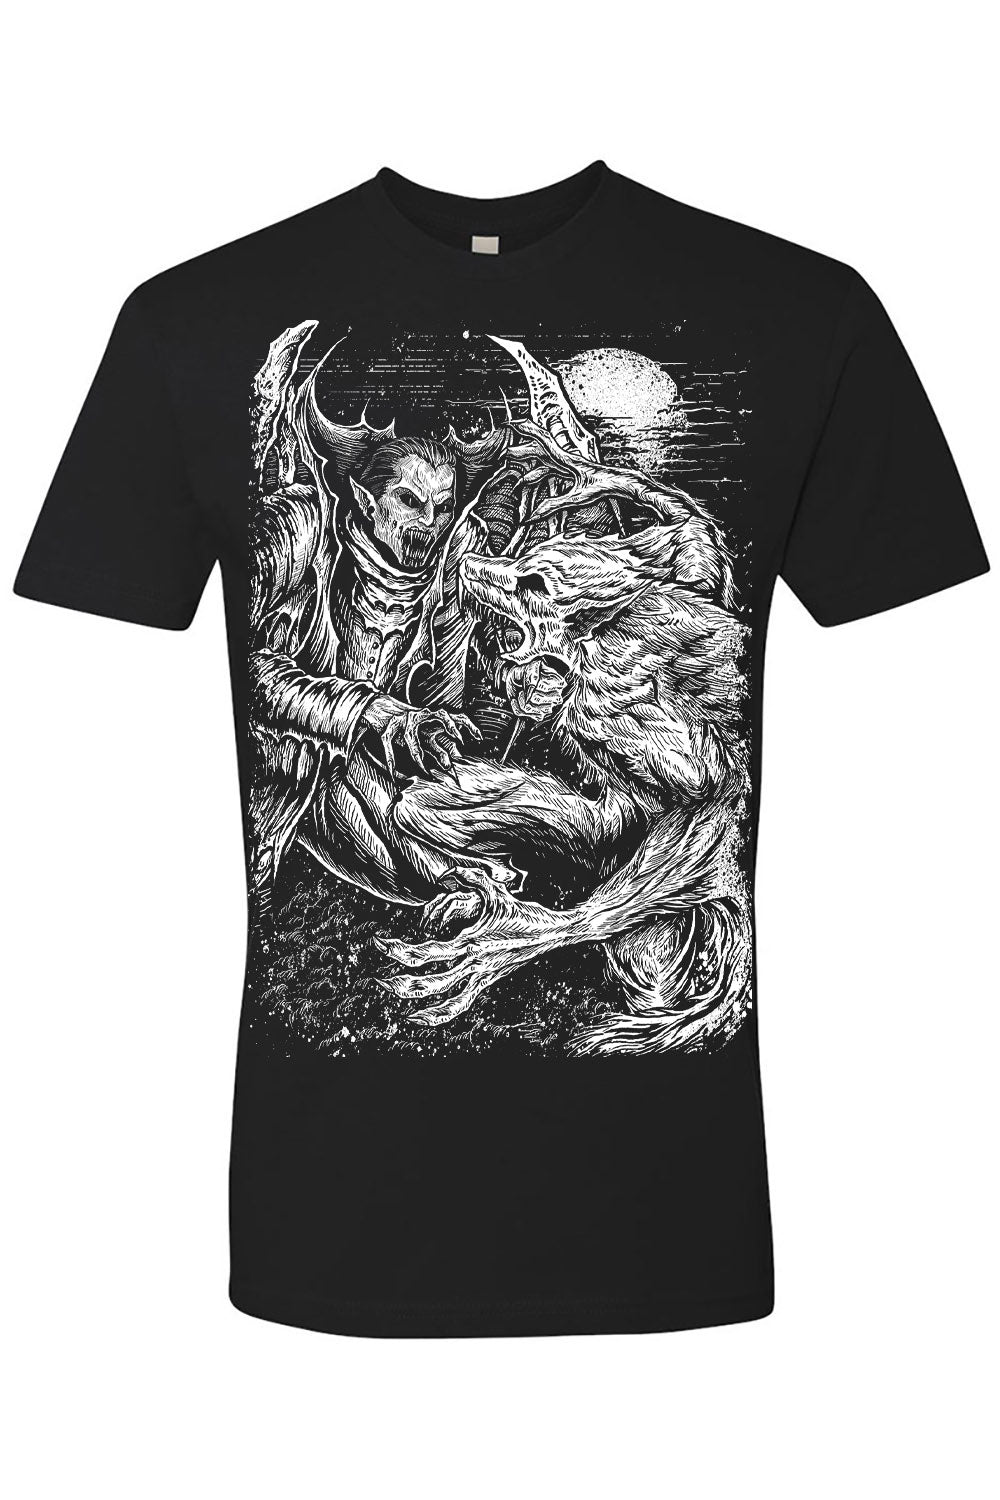 vampire fighting werewolf t-shirt